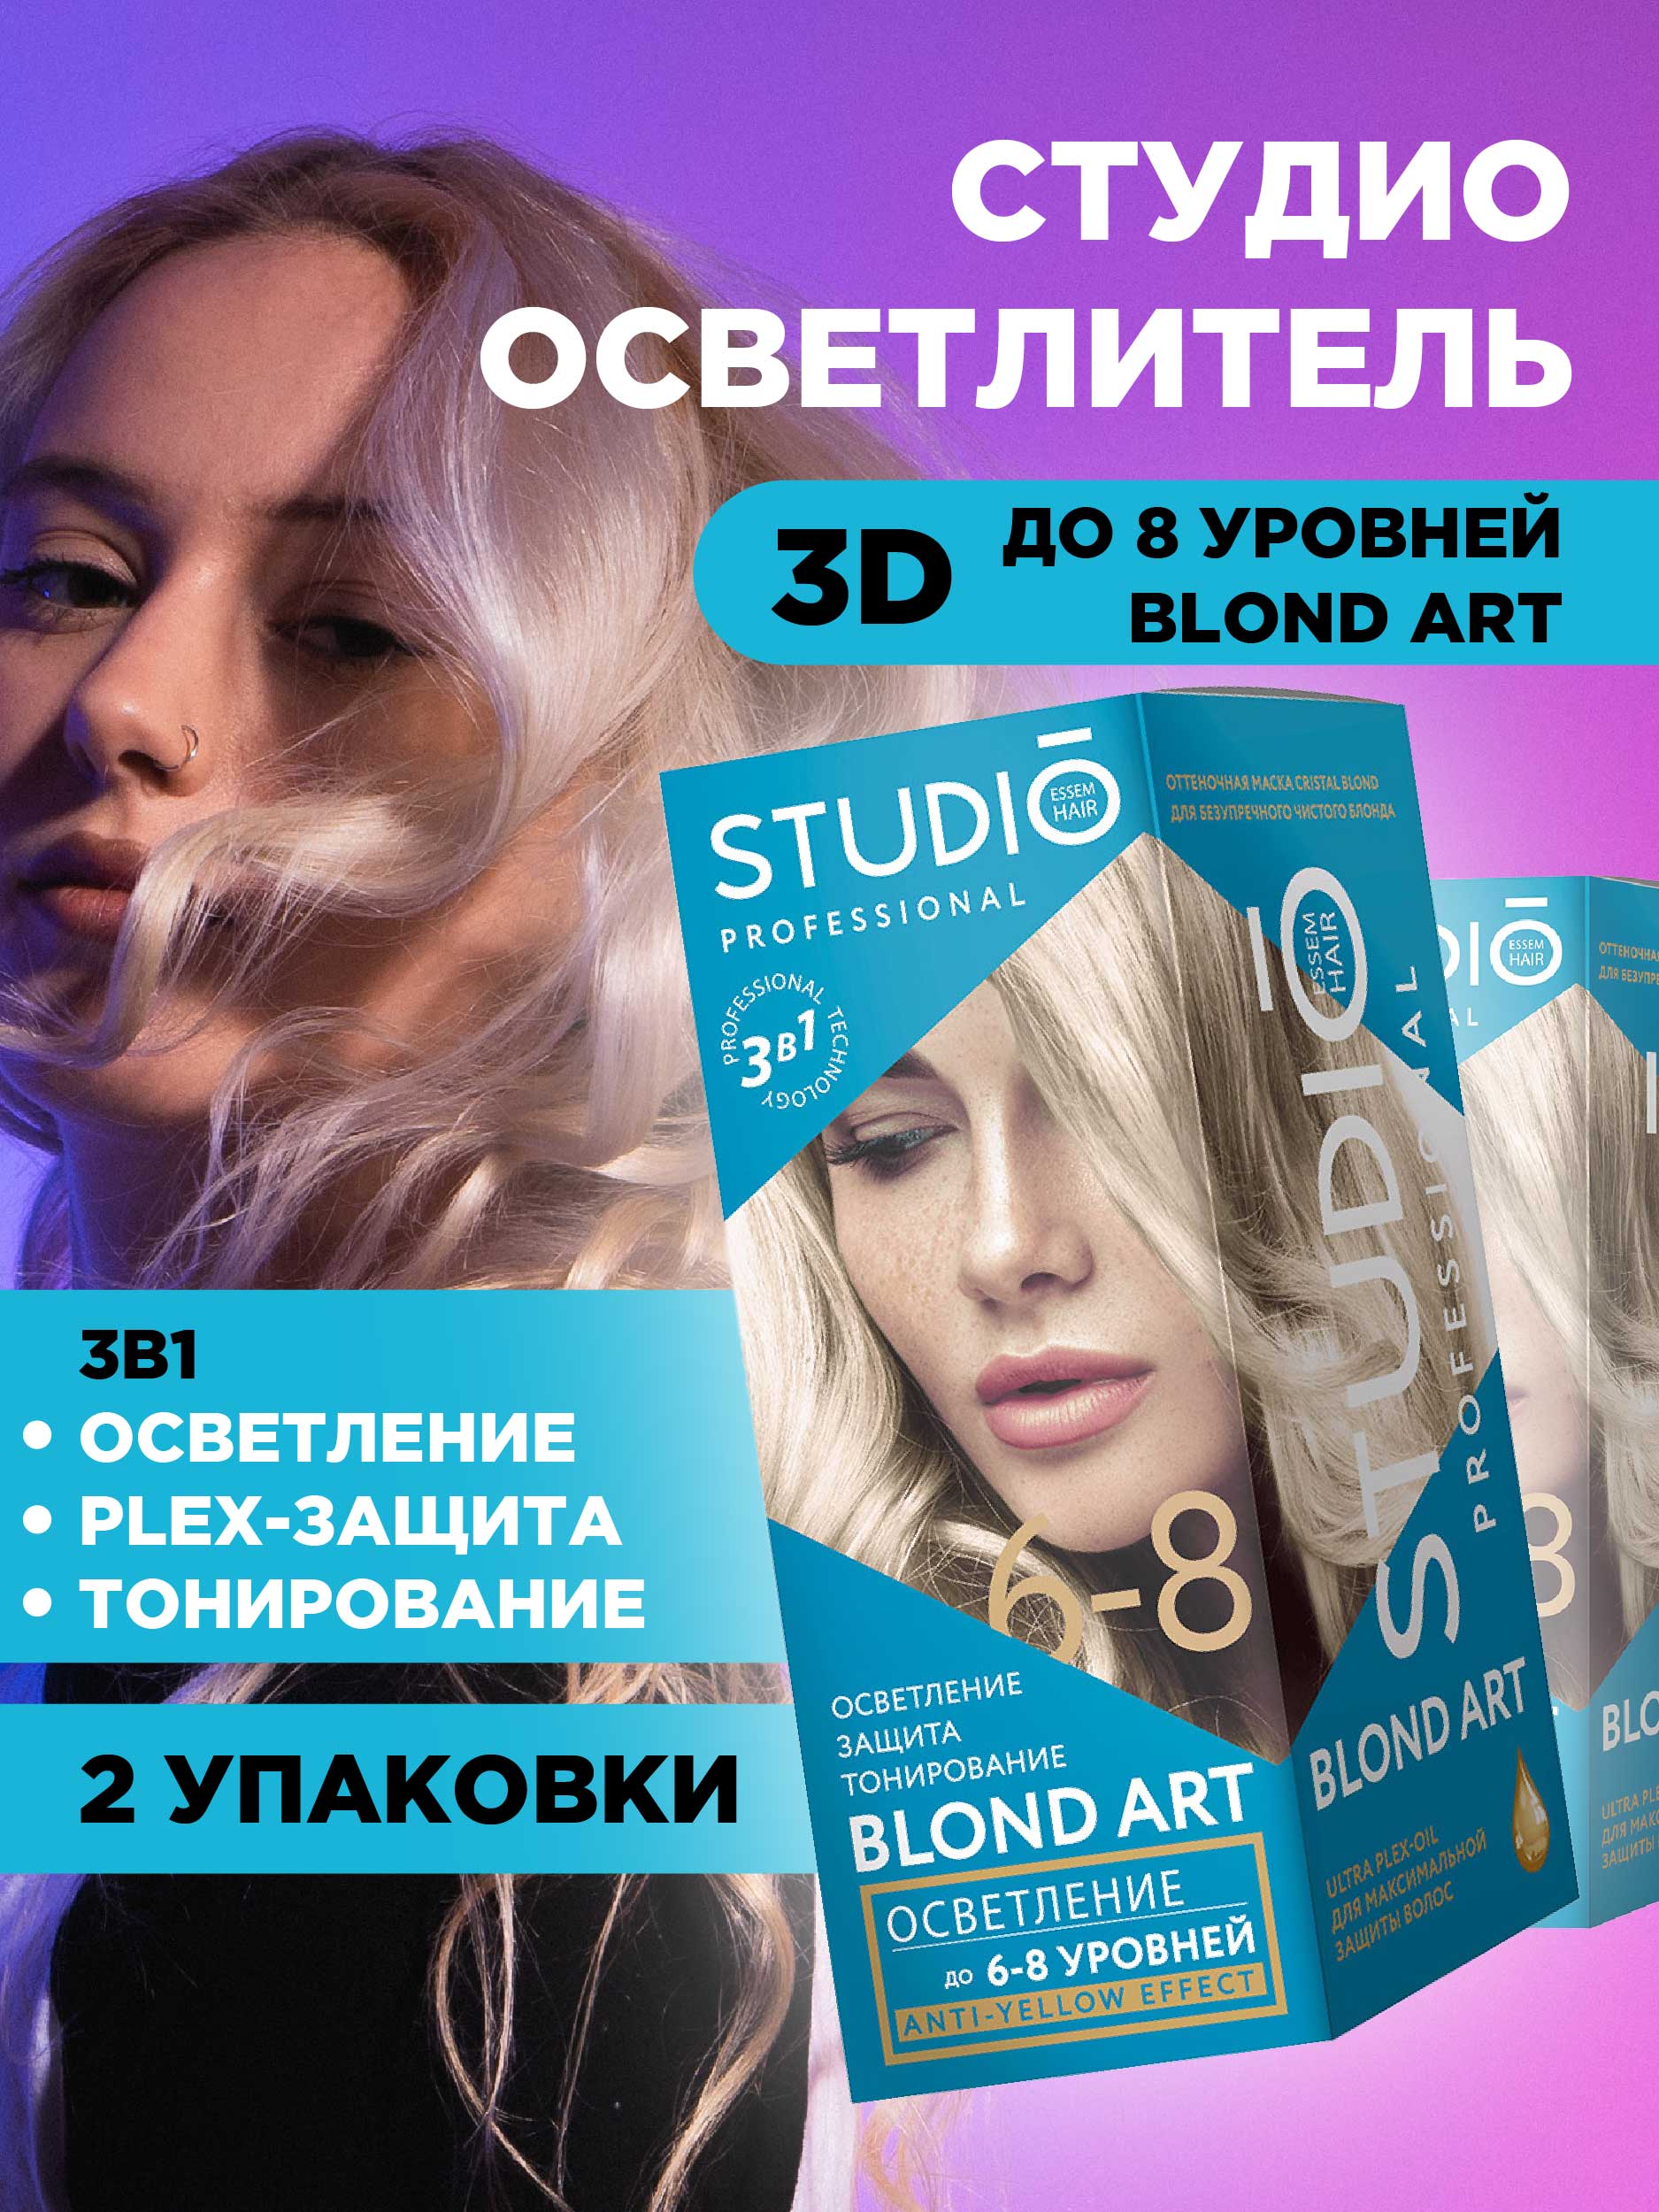 Осветлитель для волос Studio Professional 3D до 8 уровней 2*25гр 2шт сказки развиваем творческое мышление и речь двусторонние карточки с играми разных уровней сложности инструкция